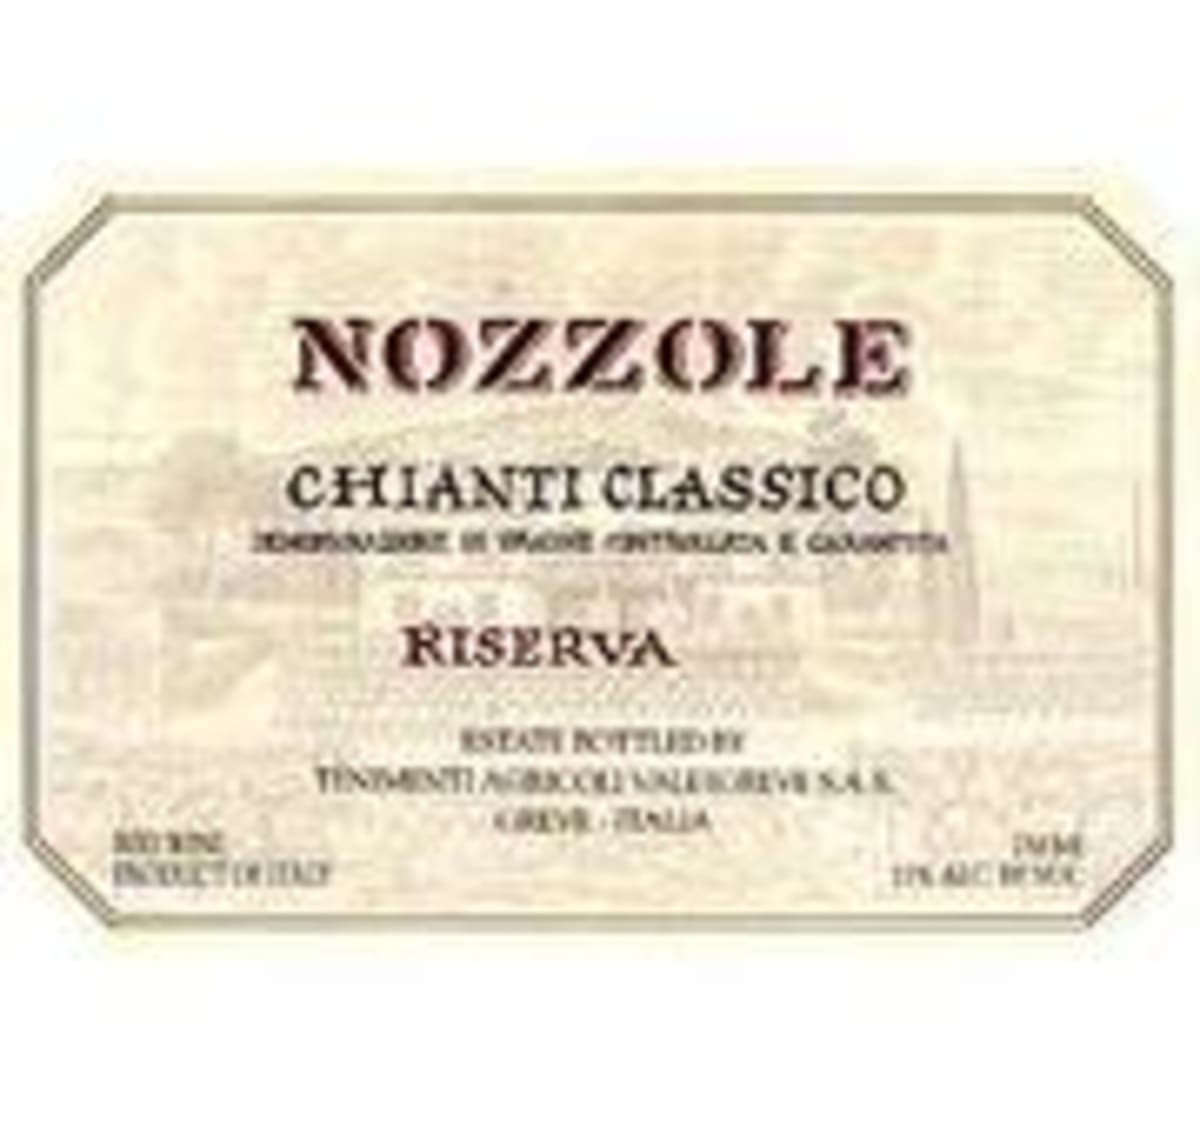 Tenuta di Nozzole Chianti Classico Riserva 1994 Front Label